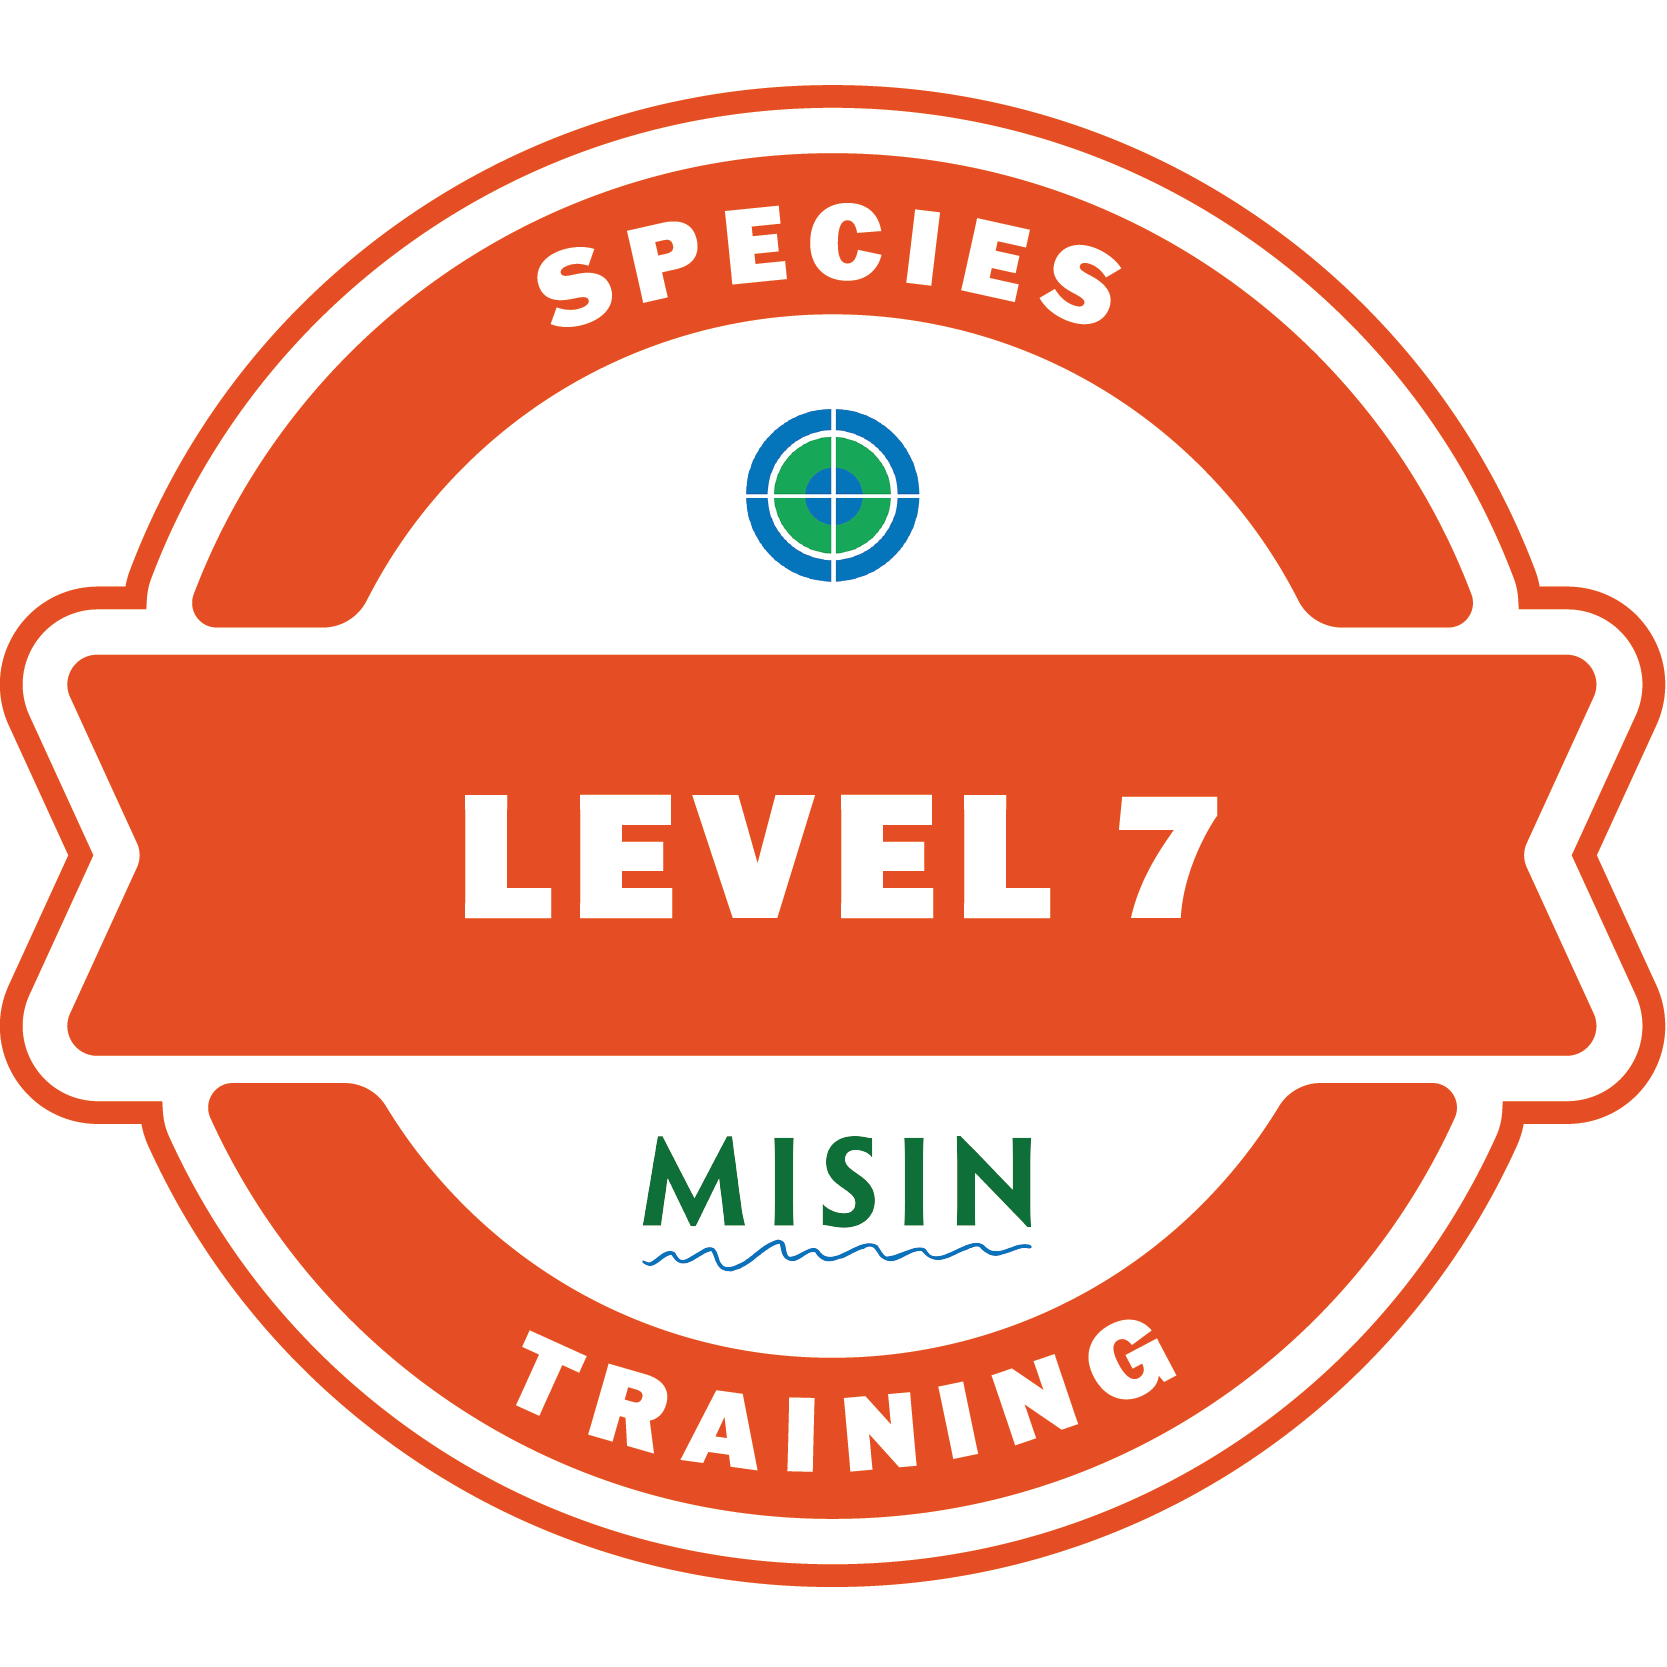 Species Training Level 7